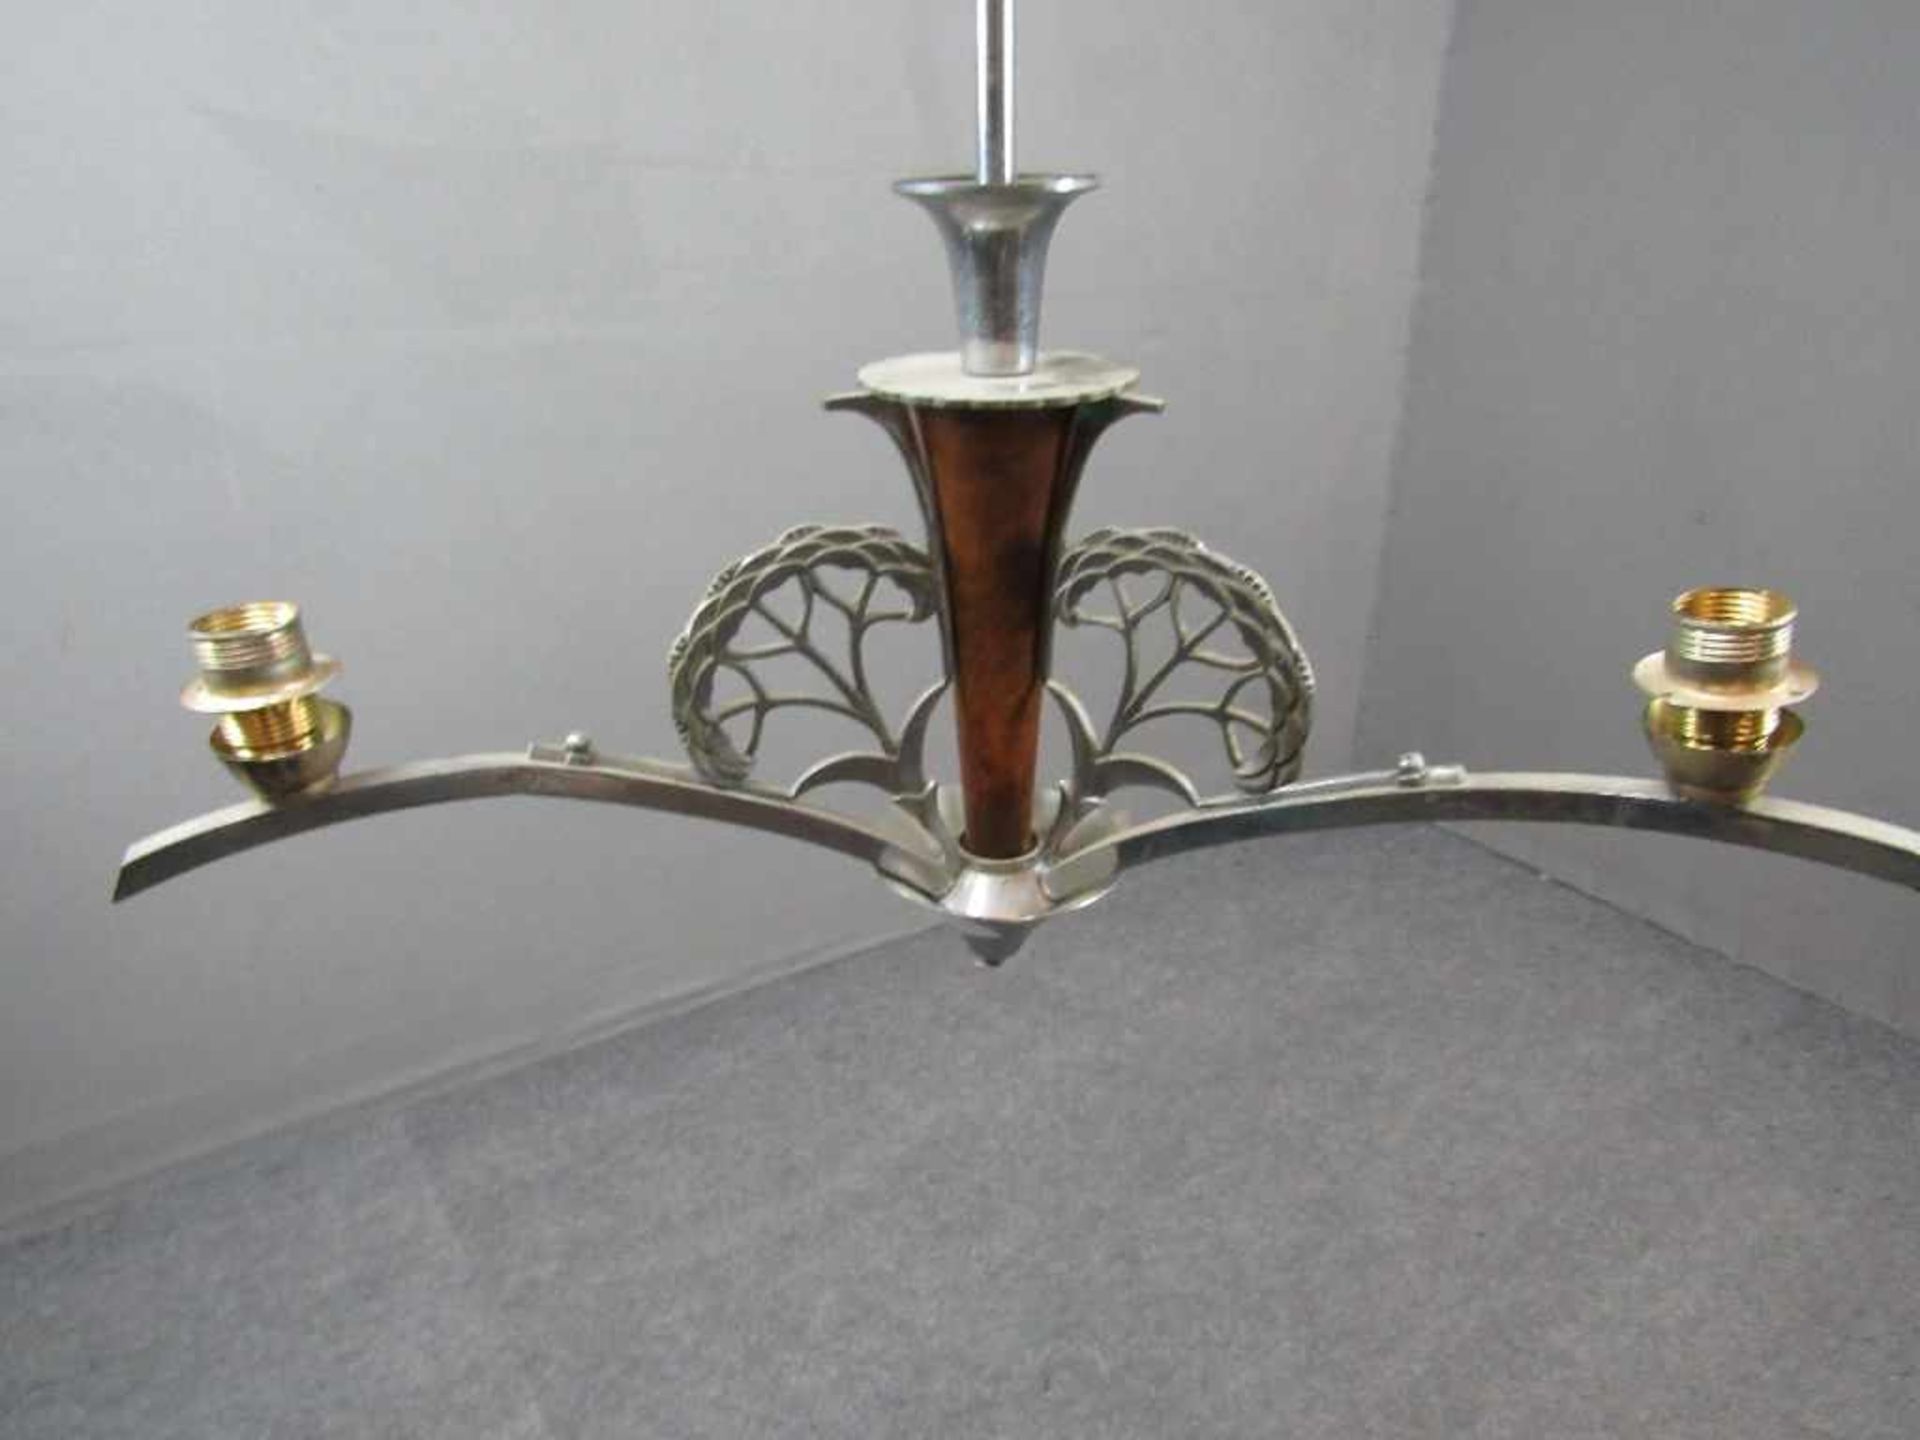 Deckenlampe Jugendstil um 1920 Metall und Holz dreiflammig 68cm hoch- - -20.00 % buyer's premium - Bild 3 aus 5